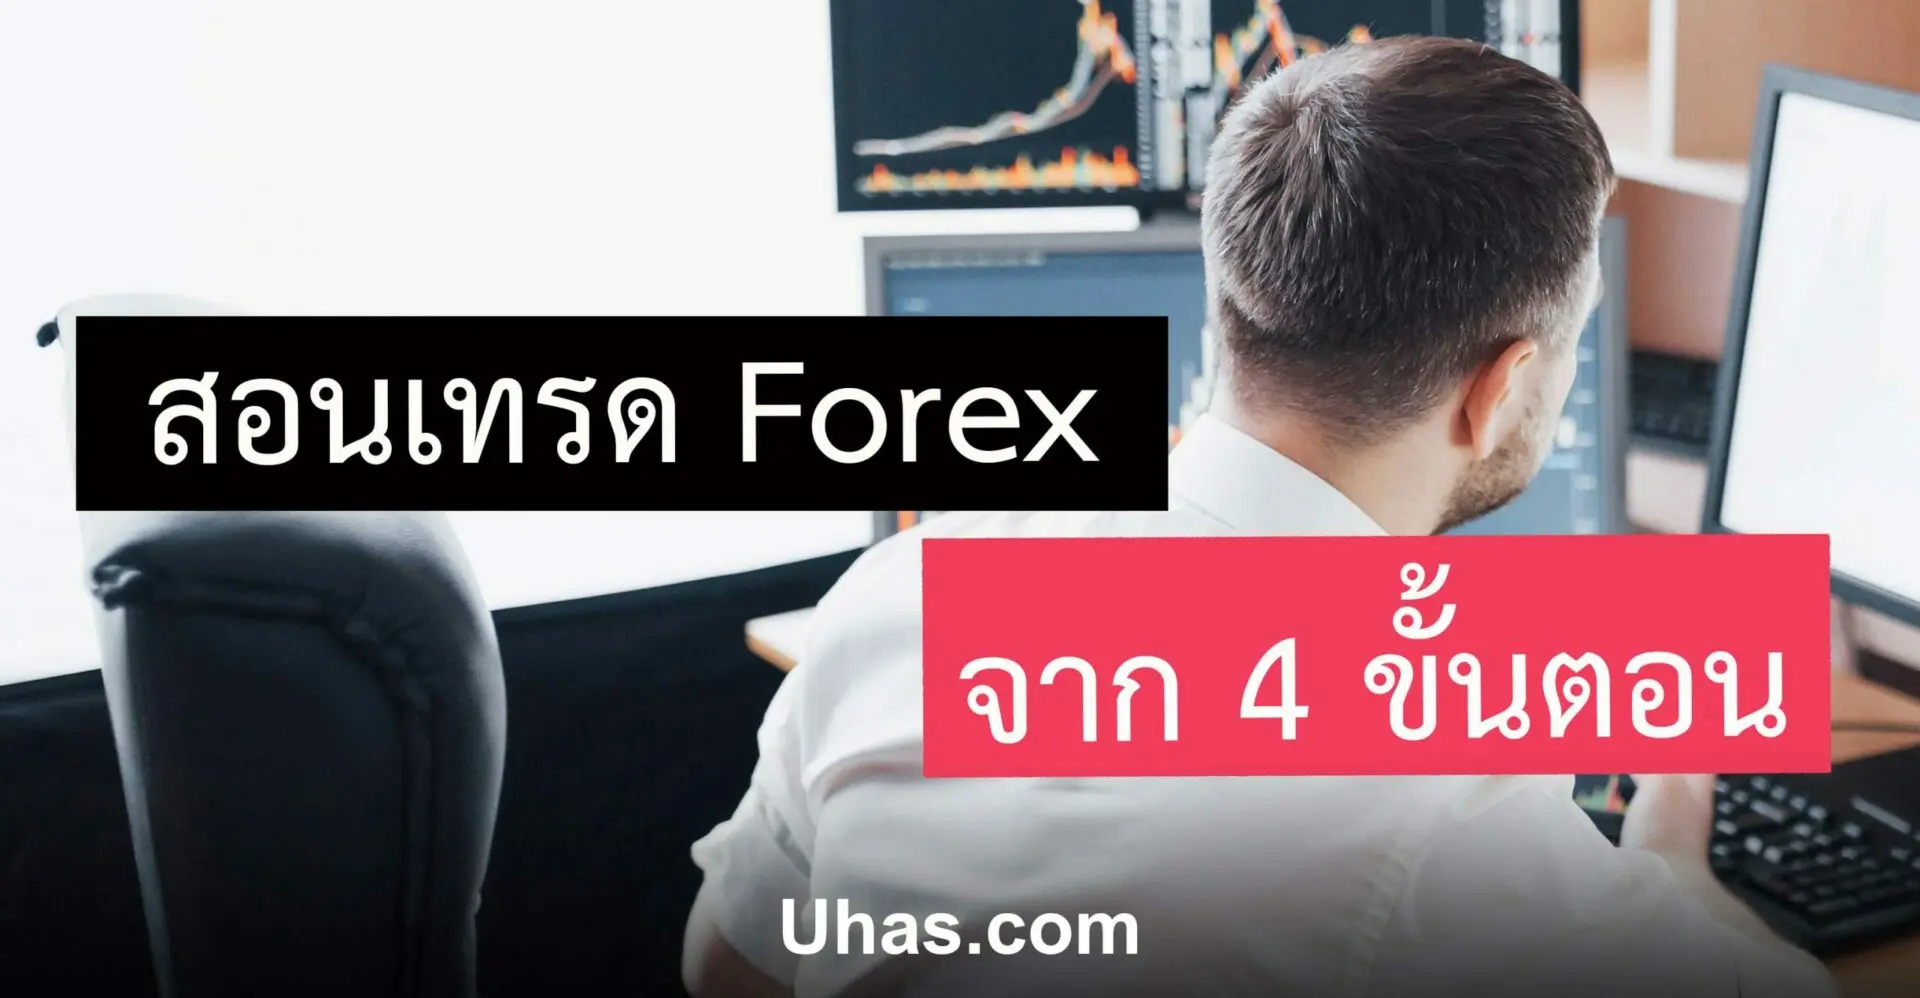 หุ้น Forex สอนเล่นหุ้น Forex เข้าใจง่ายๆโดย Forex